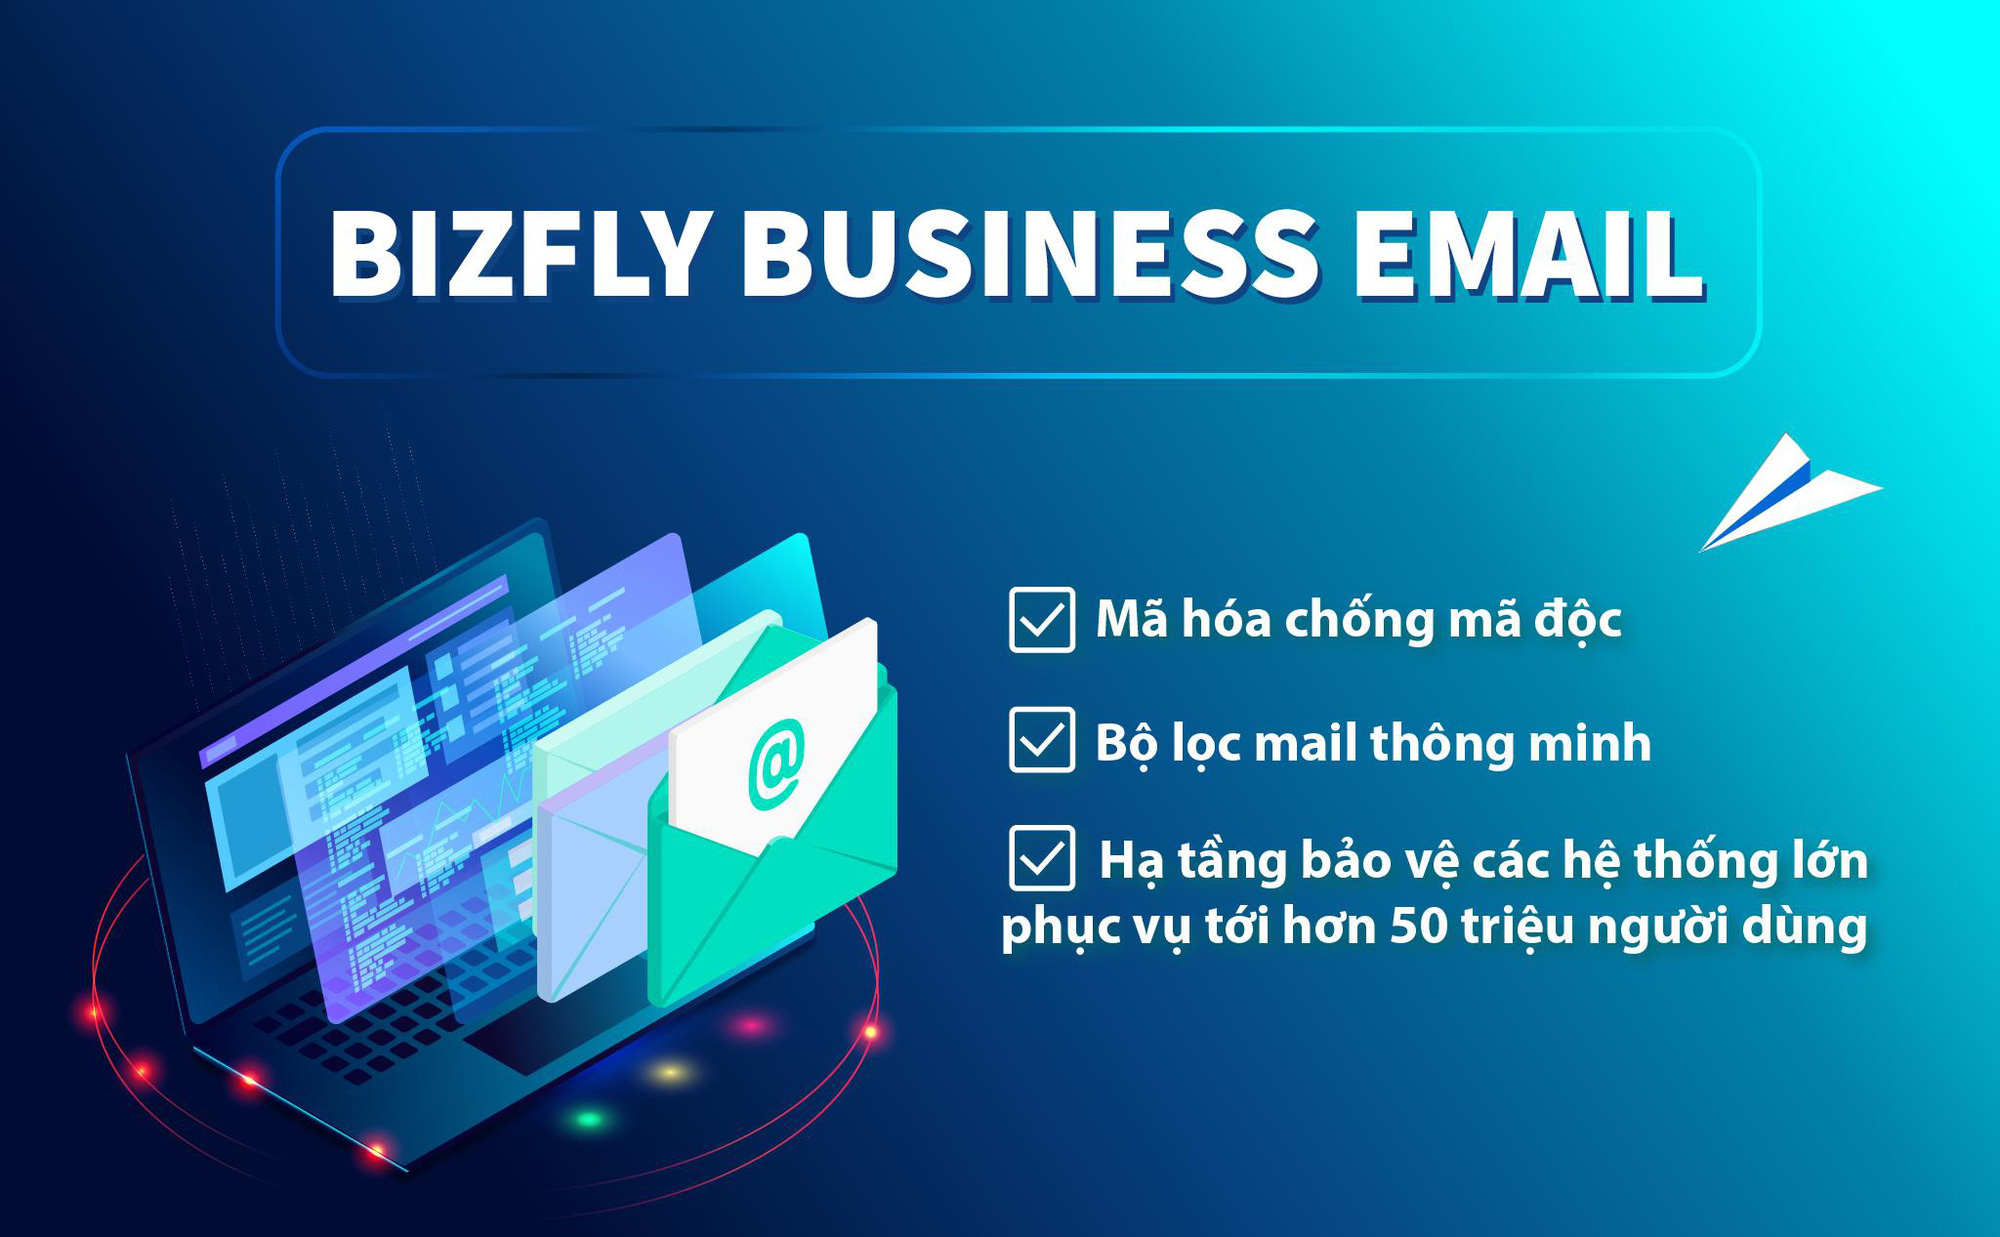 Tăng cường bảo mật để đối phó với tấn công qua email cho doanh nghiệp Việt - Ảnh 3.